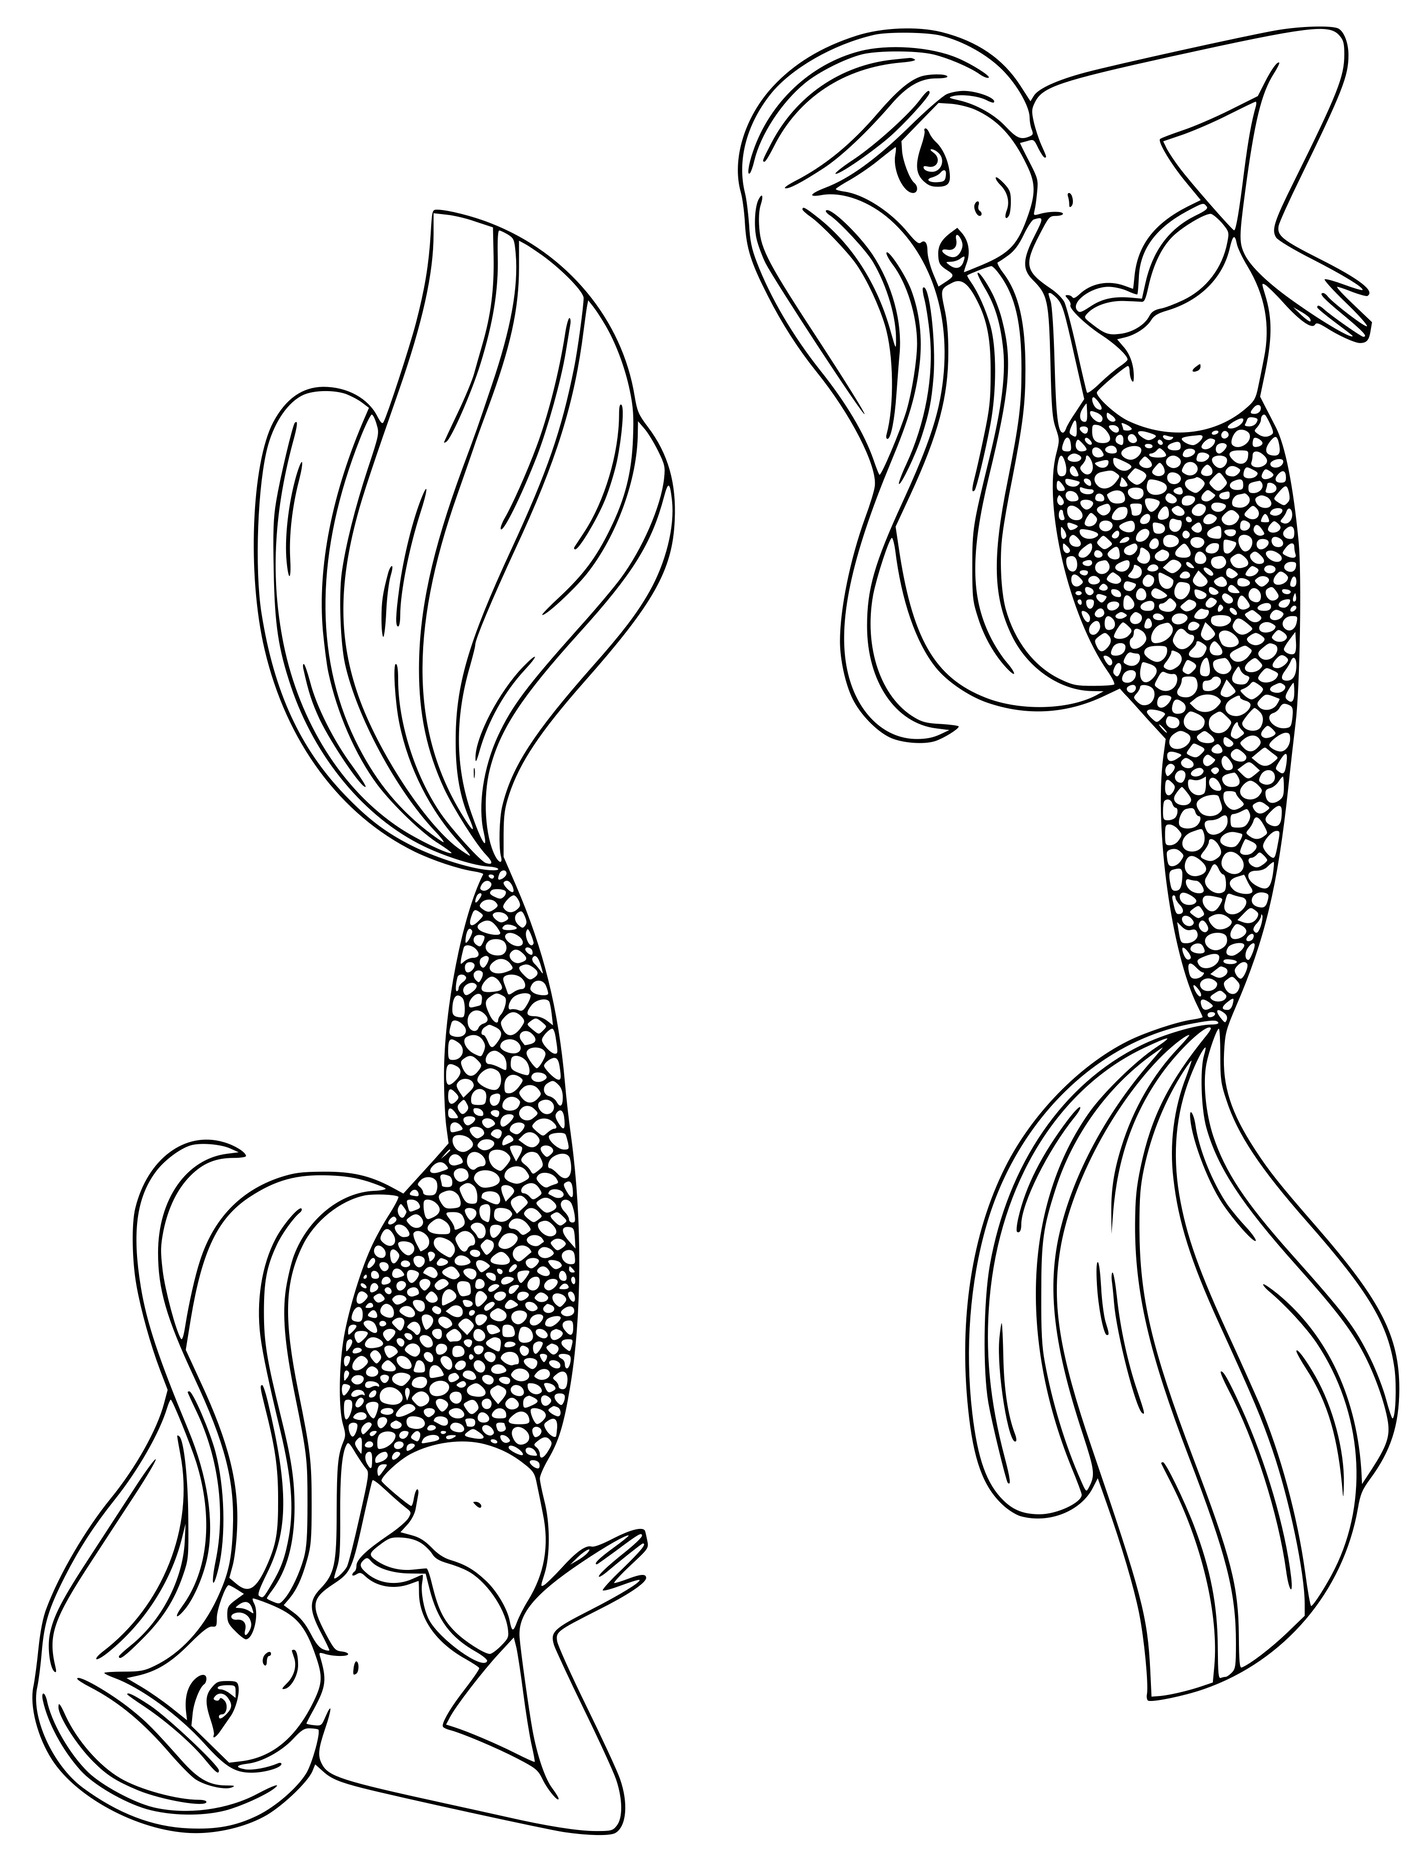 Two Mermaid Sisters